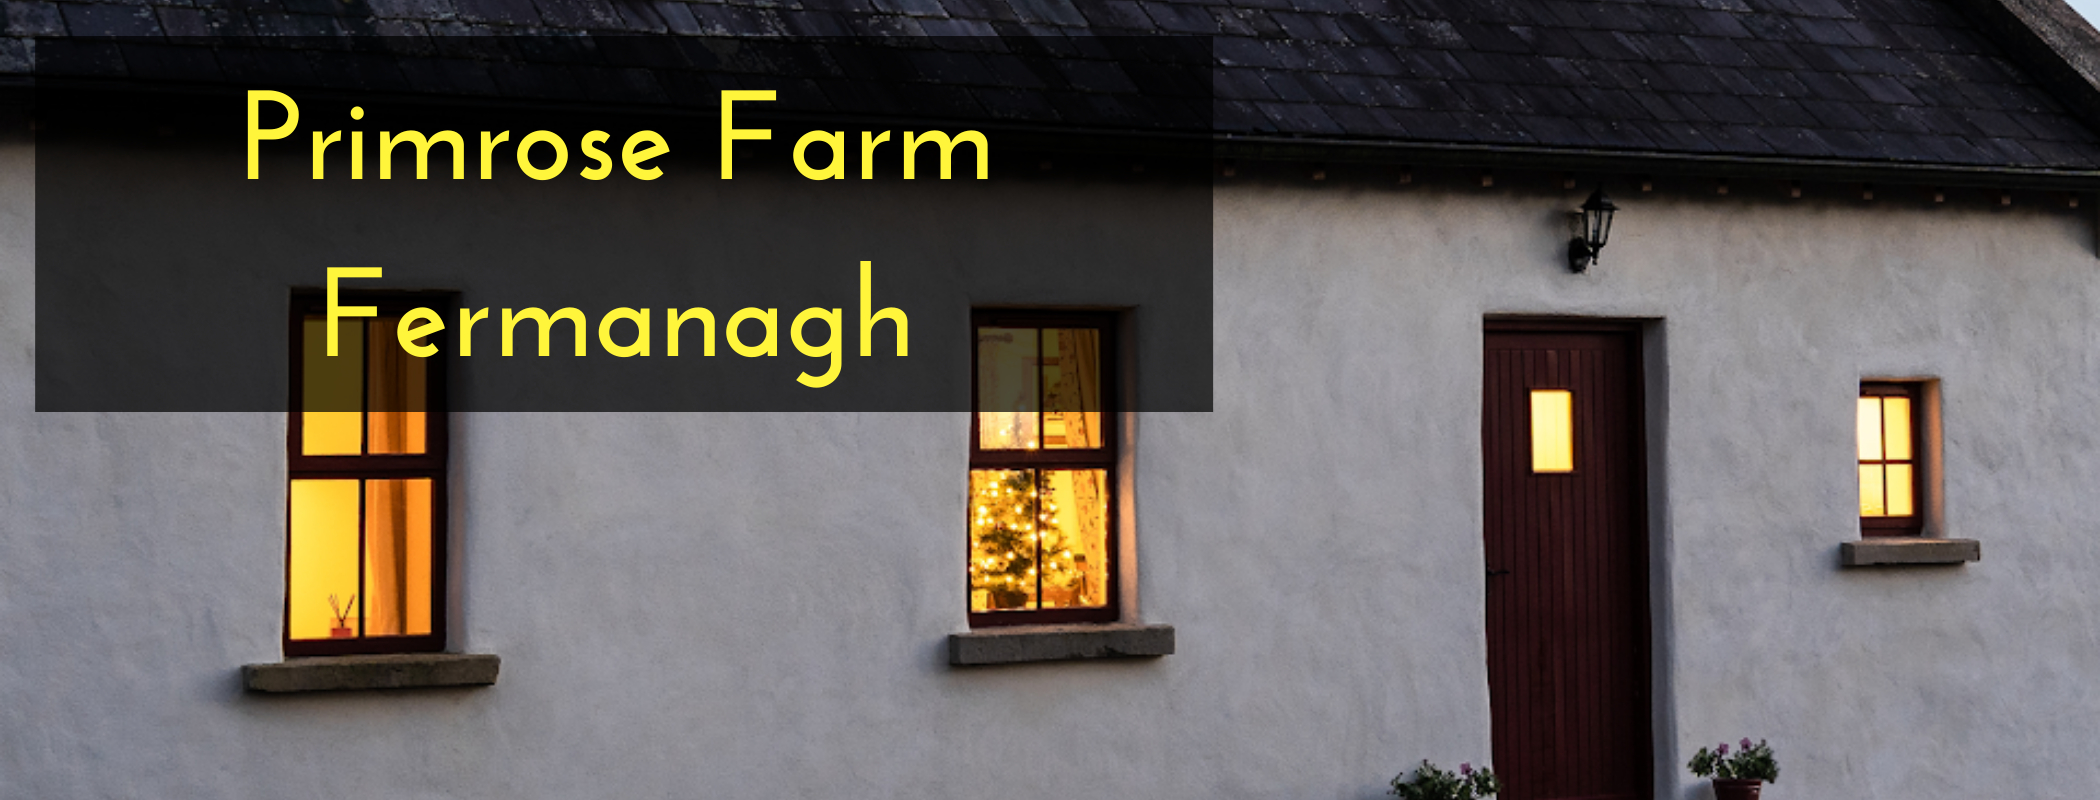 Primrose Farm Fermanagh